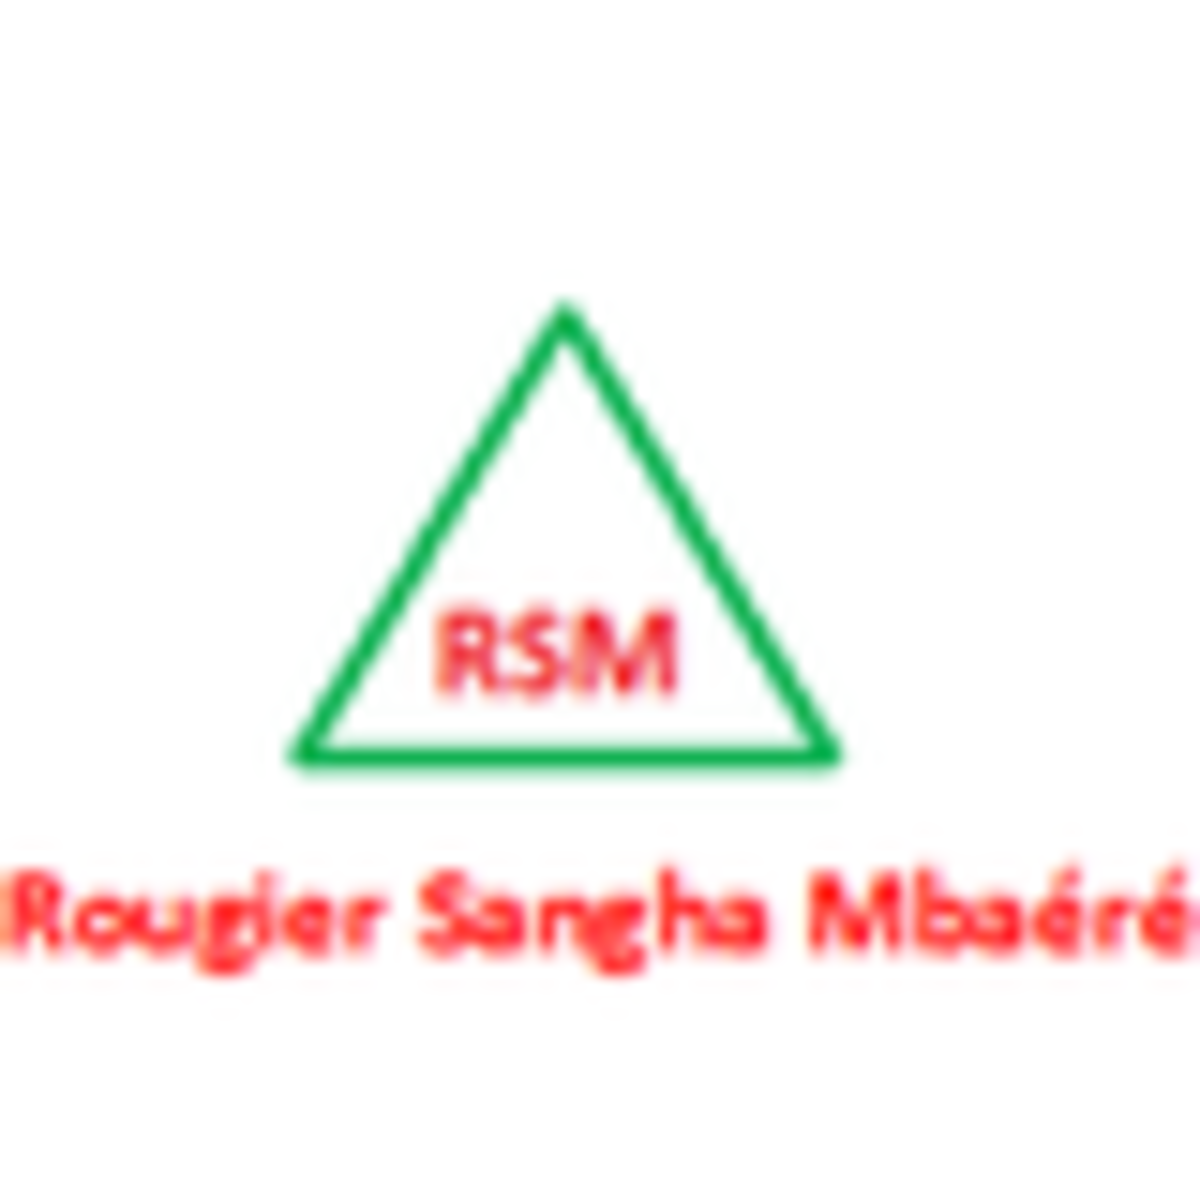 ROUGIER SANGHA MBAERE (RSM) logo